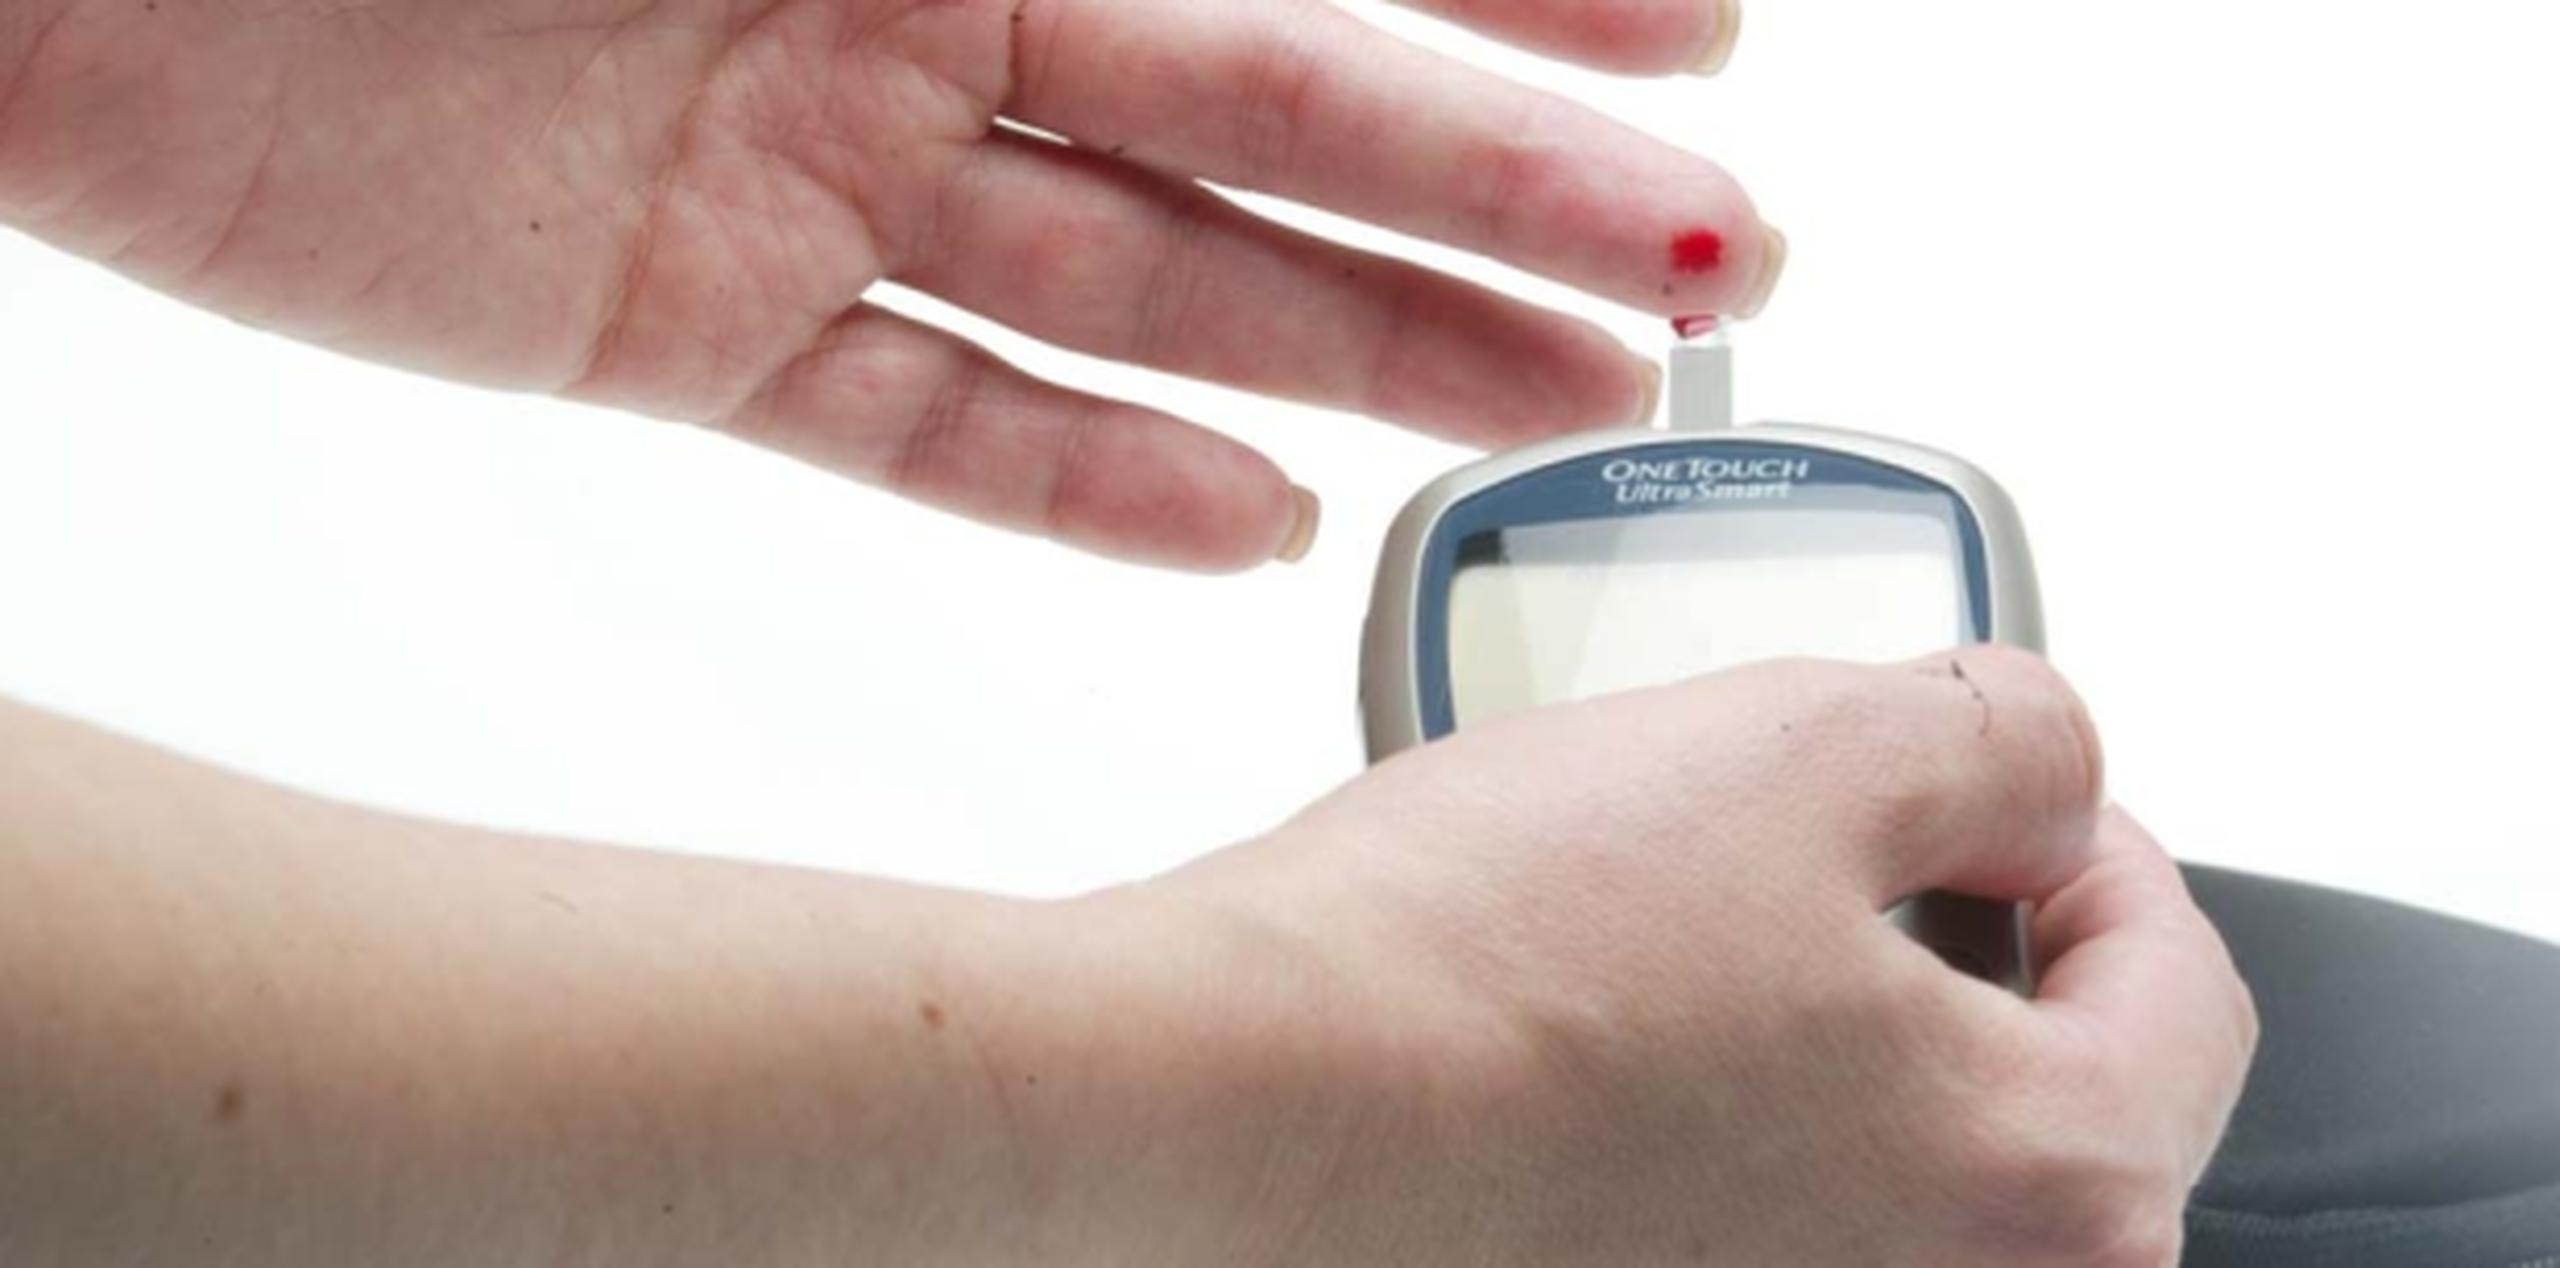 Para prevenir y controlar la diabetes es importante que las personas visiten a su médico regularmente y que se realicen pruebas para monitorear los niveles de glucosa en la sangre. (Archivo)